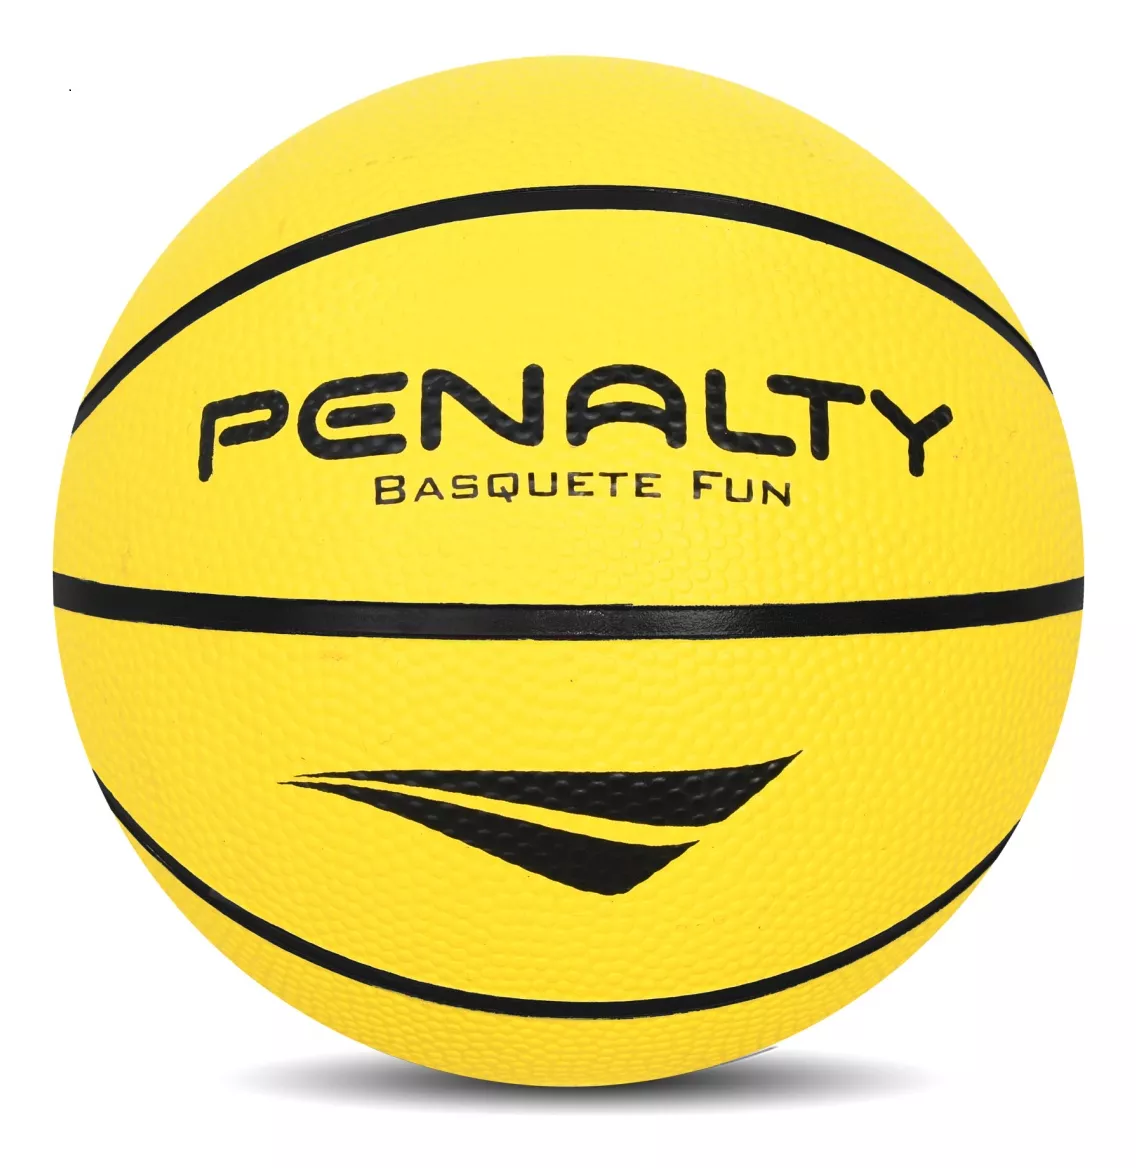 Kit 6 Bolas Basquete Oficial Playoff Penalty Atacado Com Nf - Bola